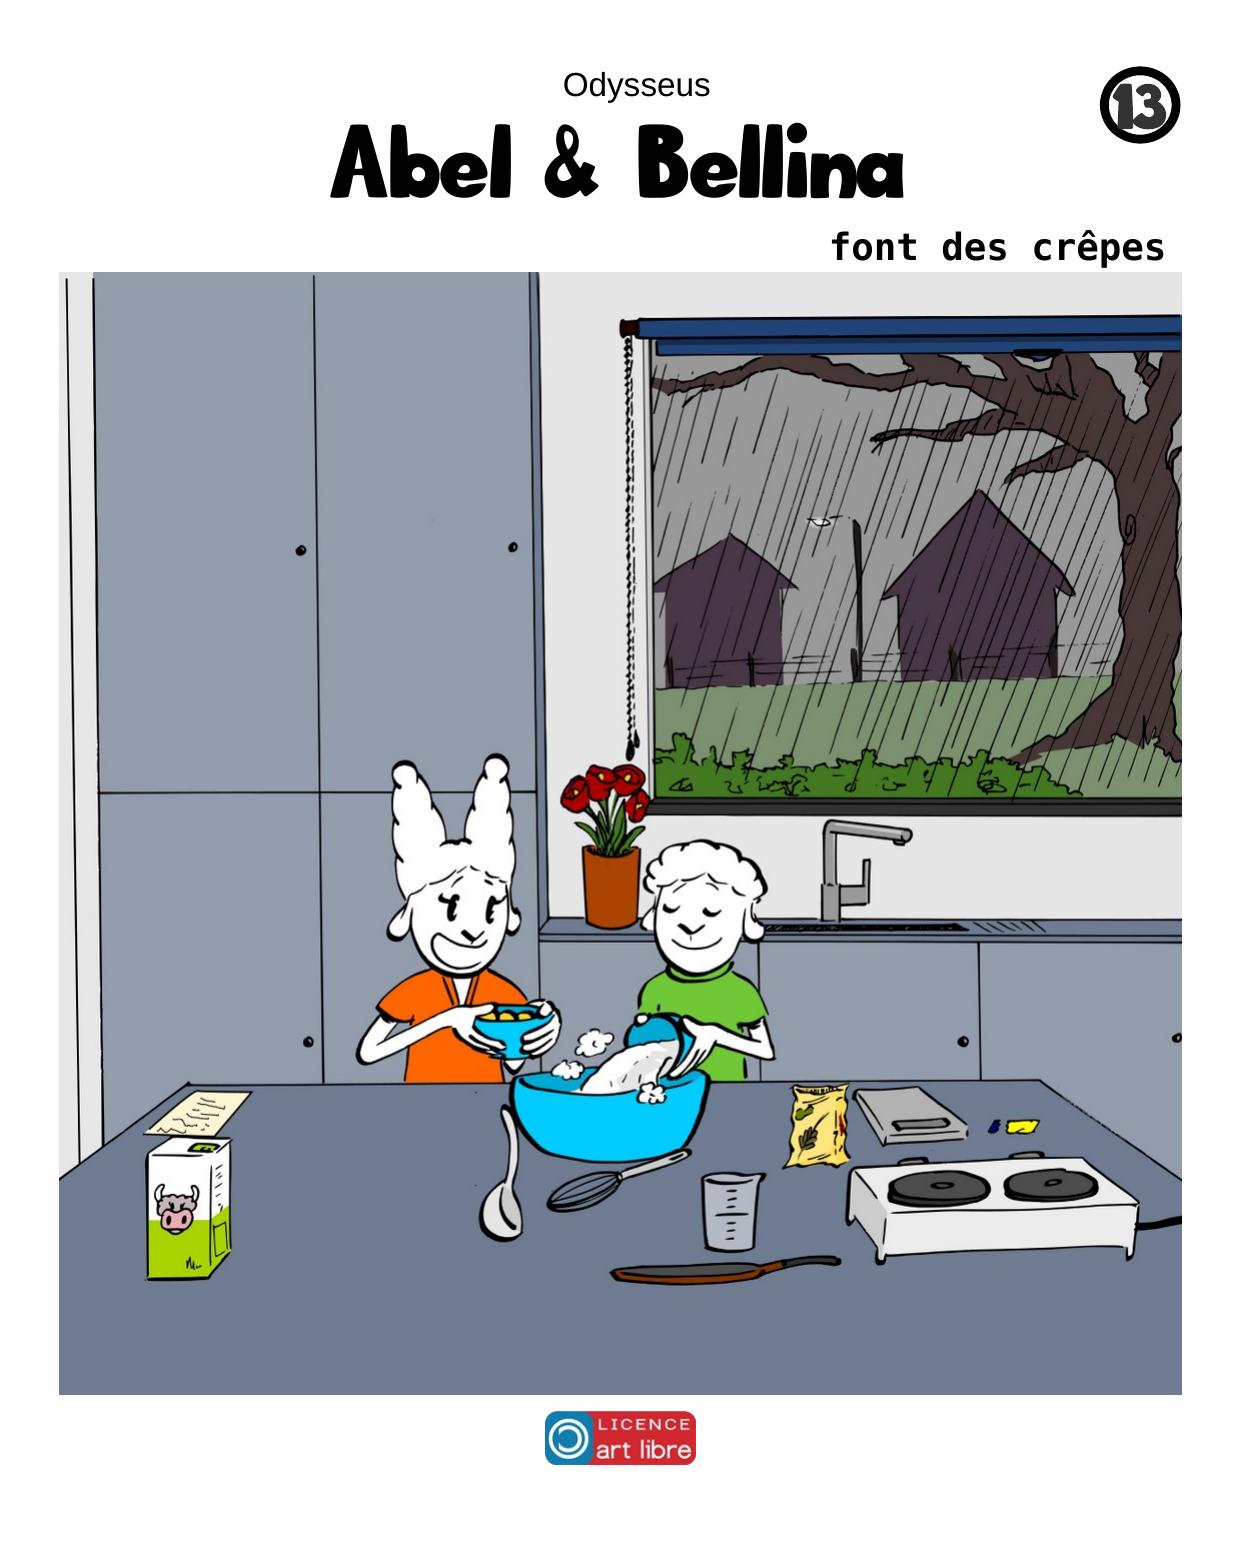 Abel & Bellina font des crêpes